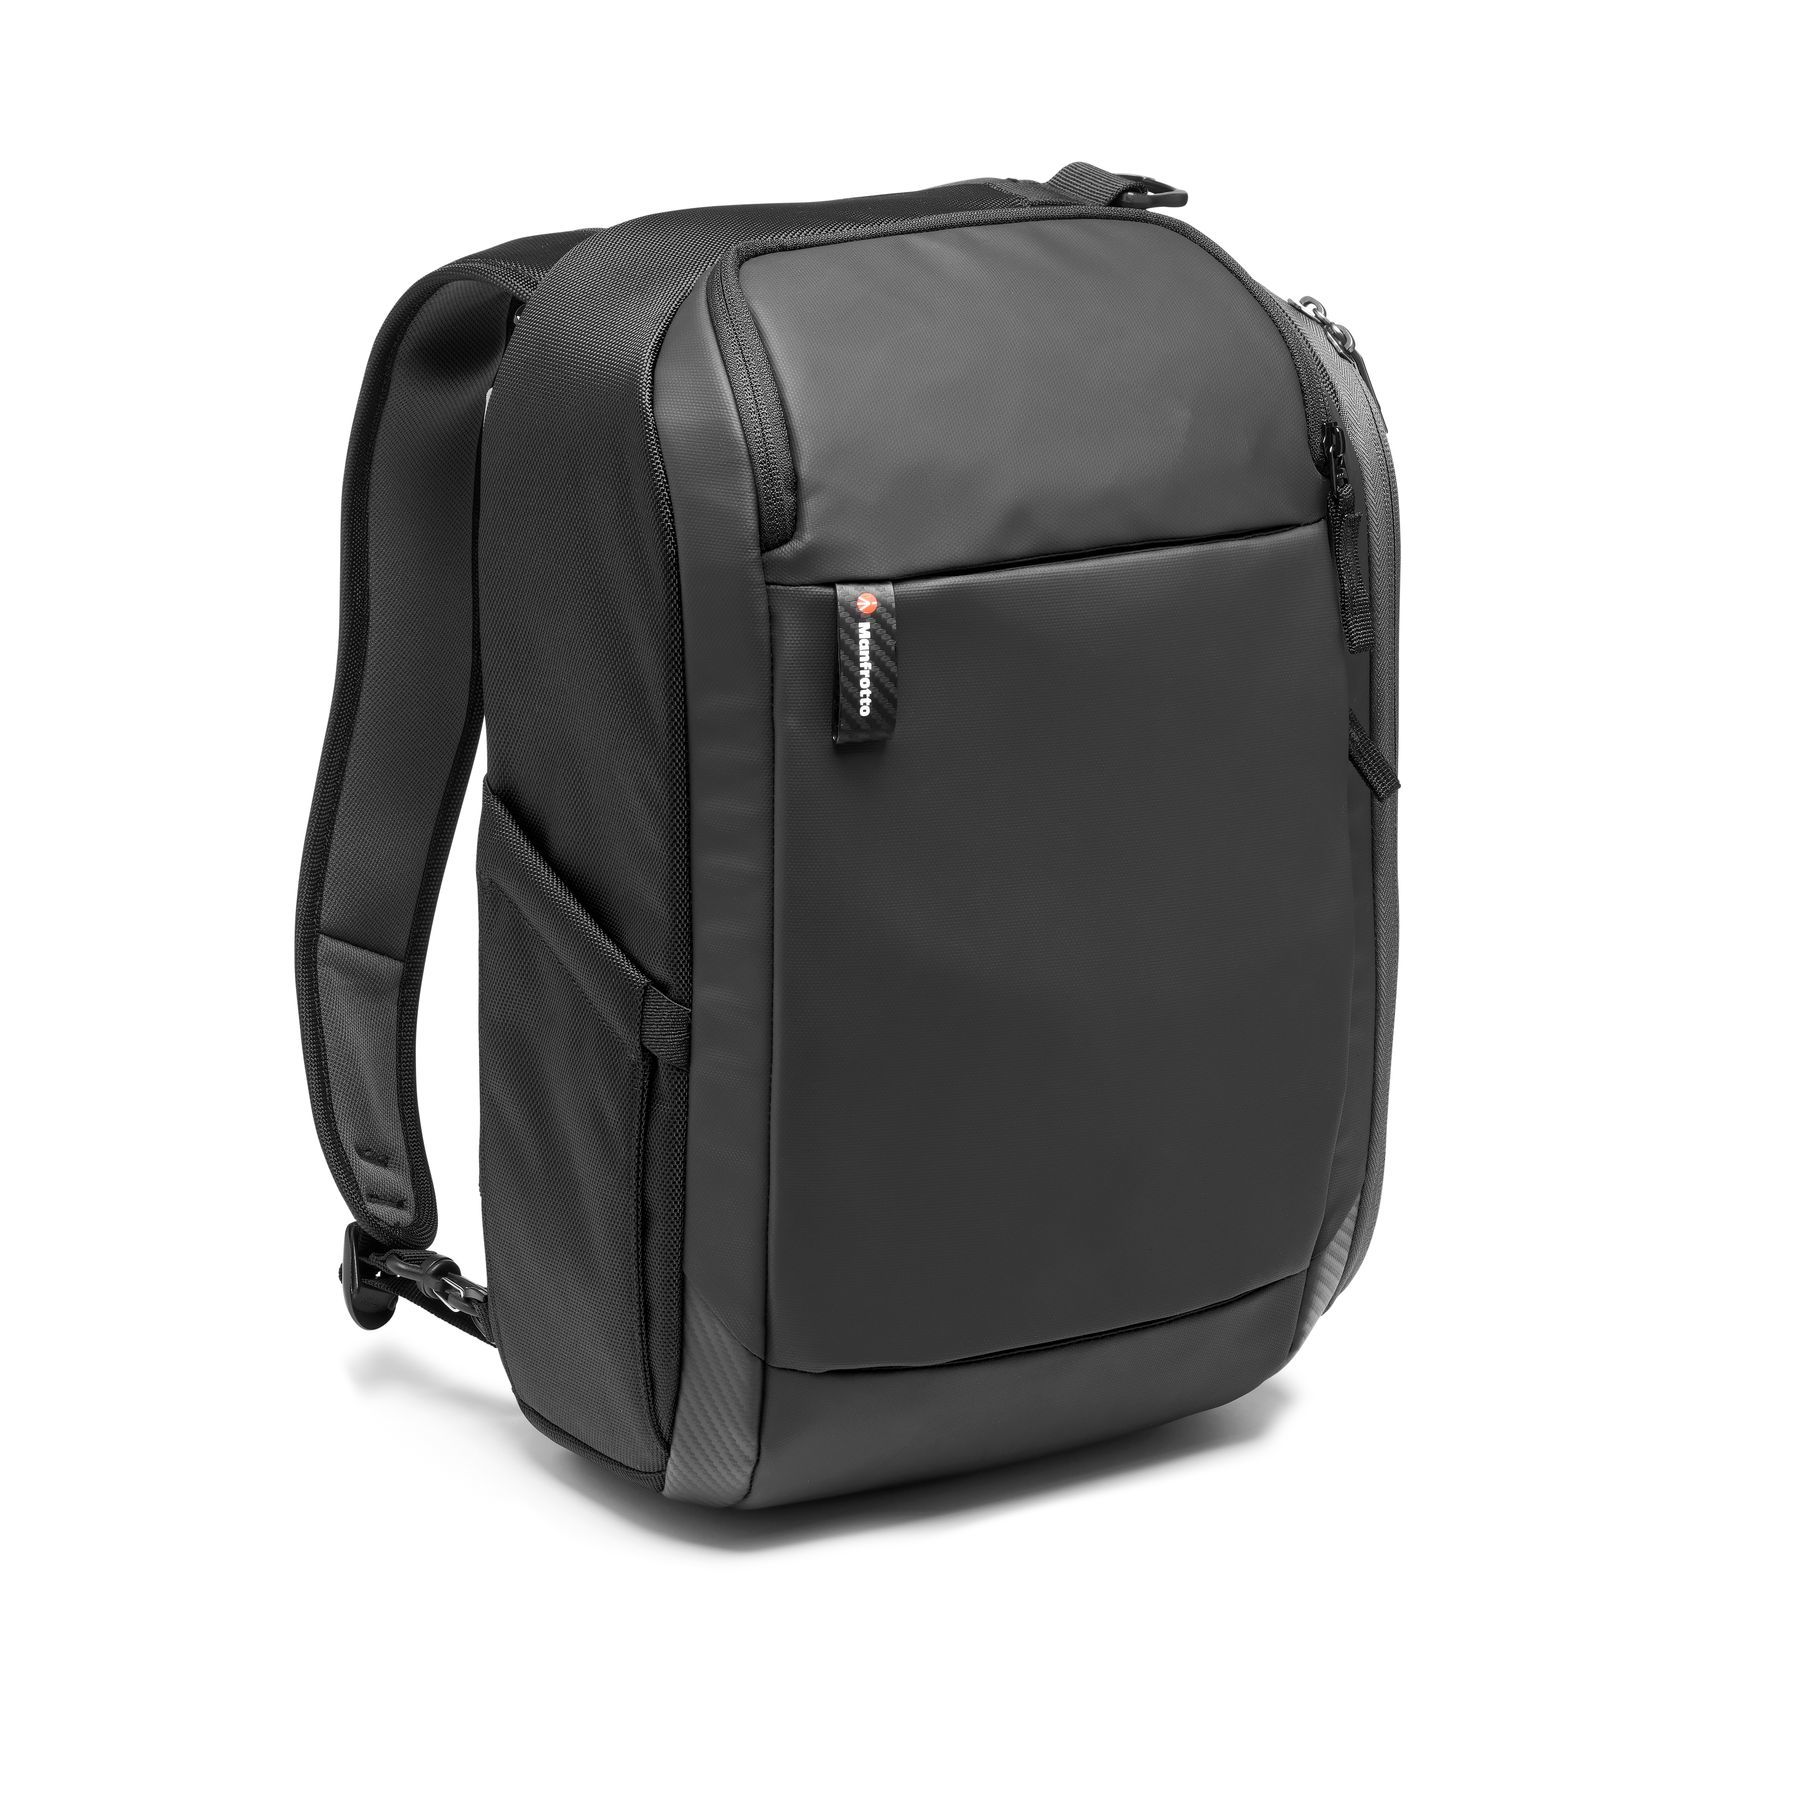 Рюкзак для фотоаппарата Manfrotto MA2-BP-H Advanced2 Hybrid Backpack M в магазине RentaPhoto.Store